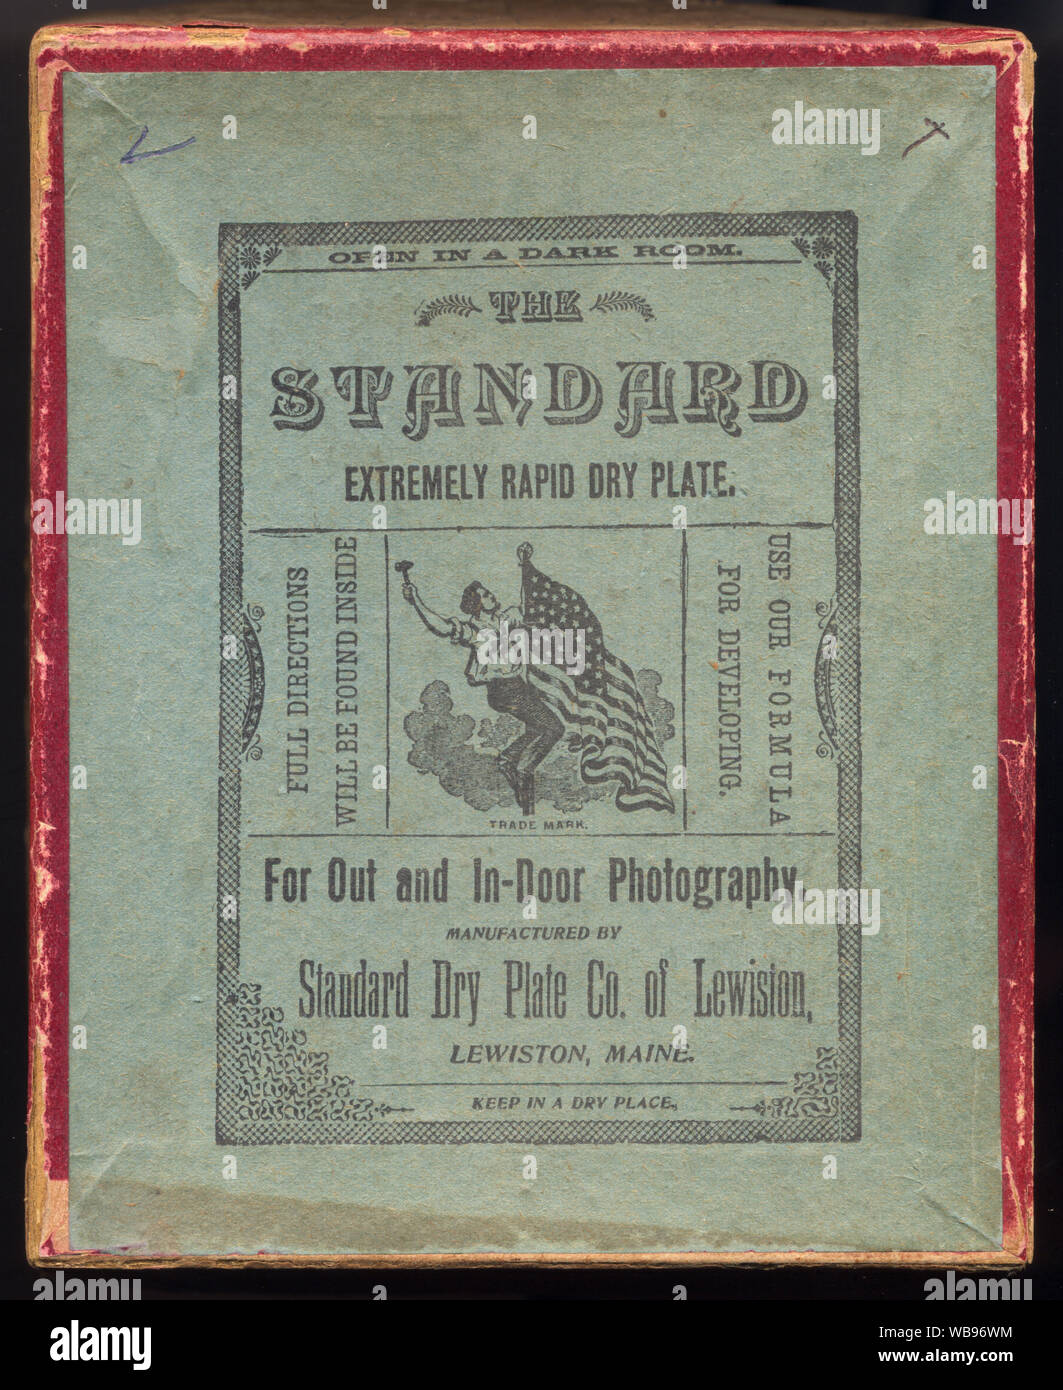 Packung mit 4 x 5 Zoll Glasplatte negative, obere Abdeckung Design. Aus der ursprünglichen Box abfragen. Etwa Ende 1890 - Anfang 1900. Stockfoto